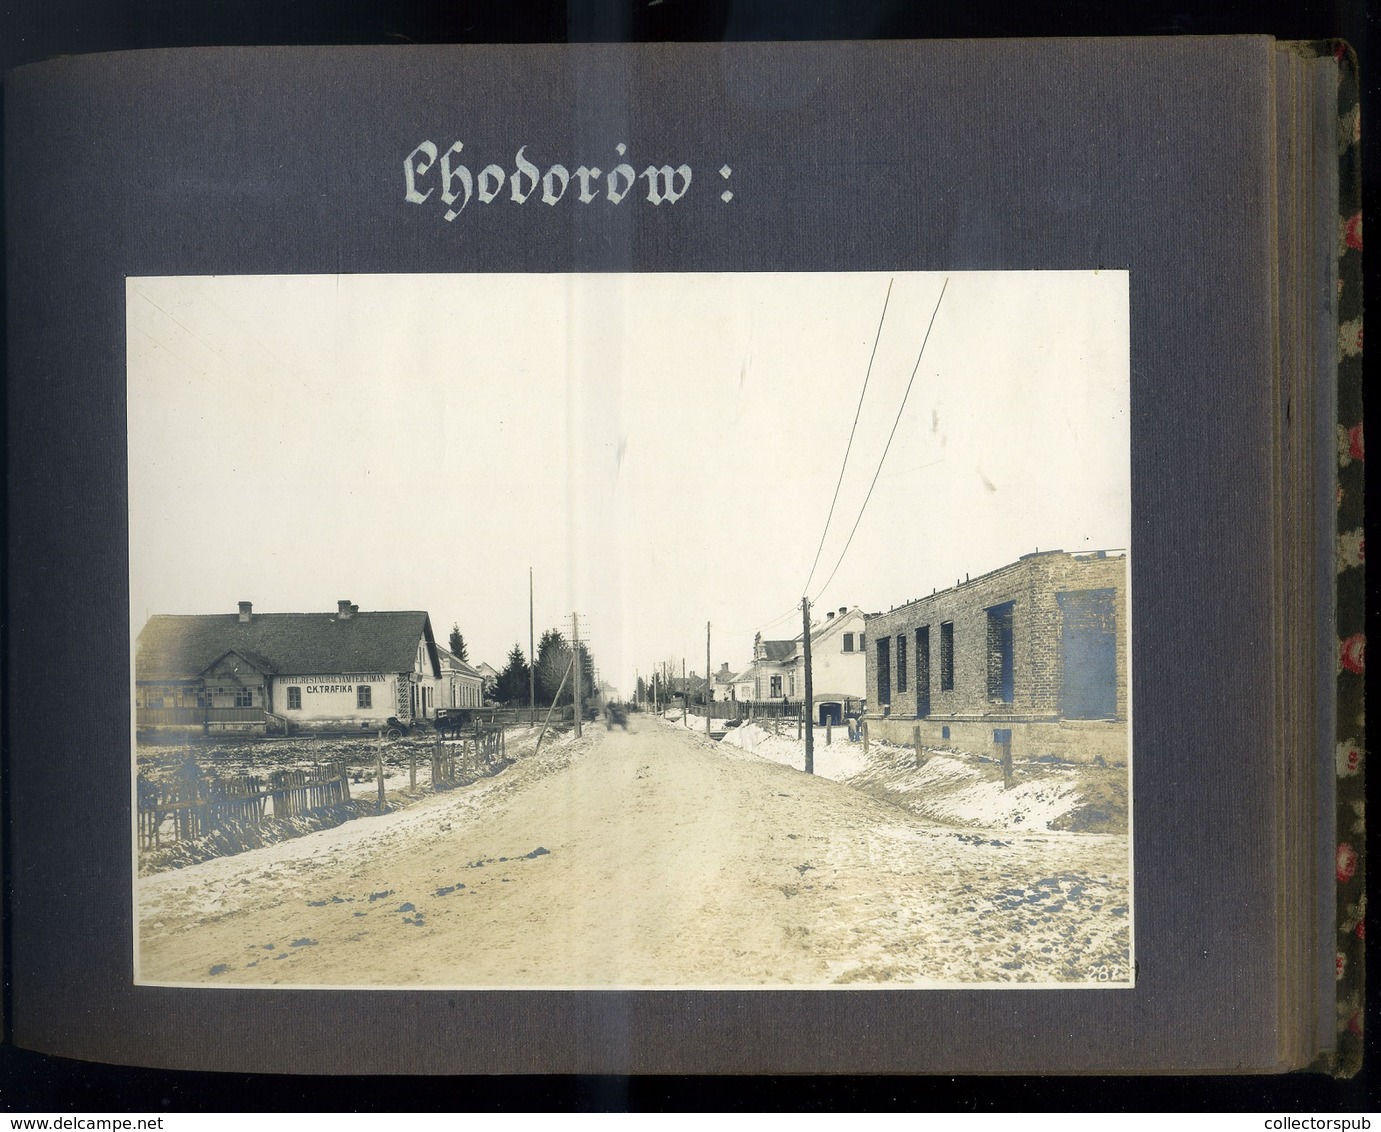 POLAND  LENGYELORSZÁG 1917. Galícia I.VH-s fotóalbum, sok jó város fotóval,katonák,judaica etc. 22 fotó oldal.